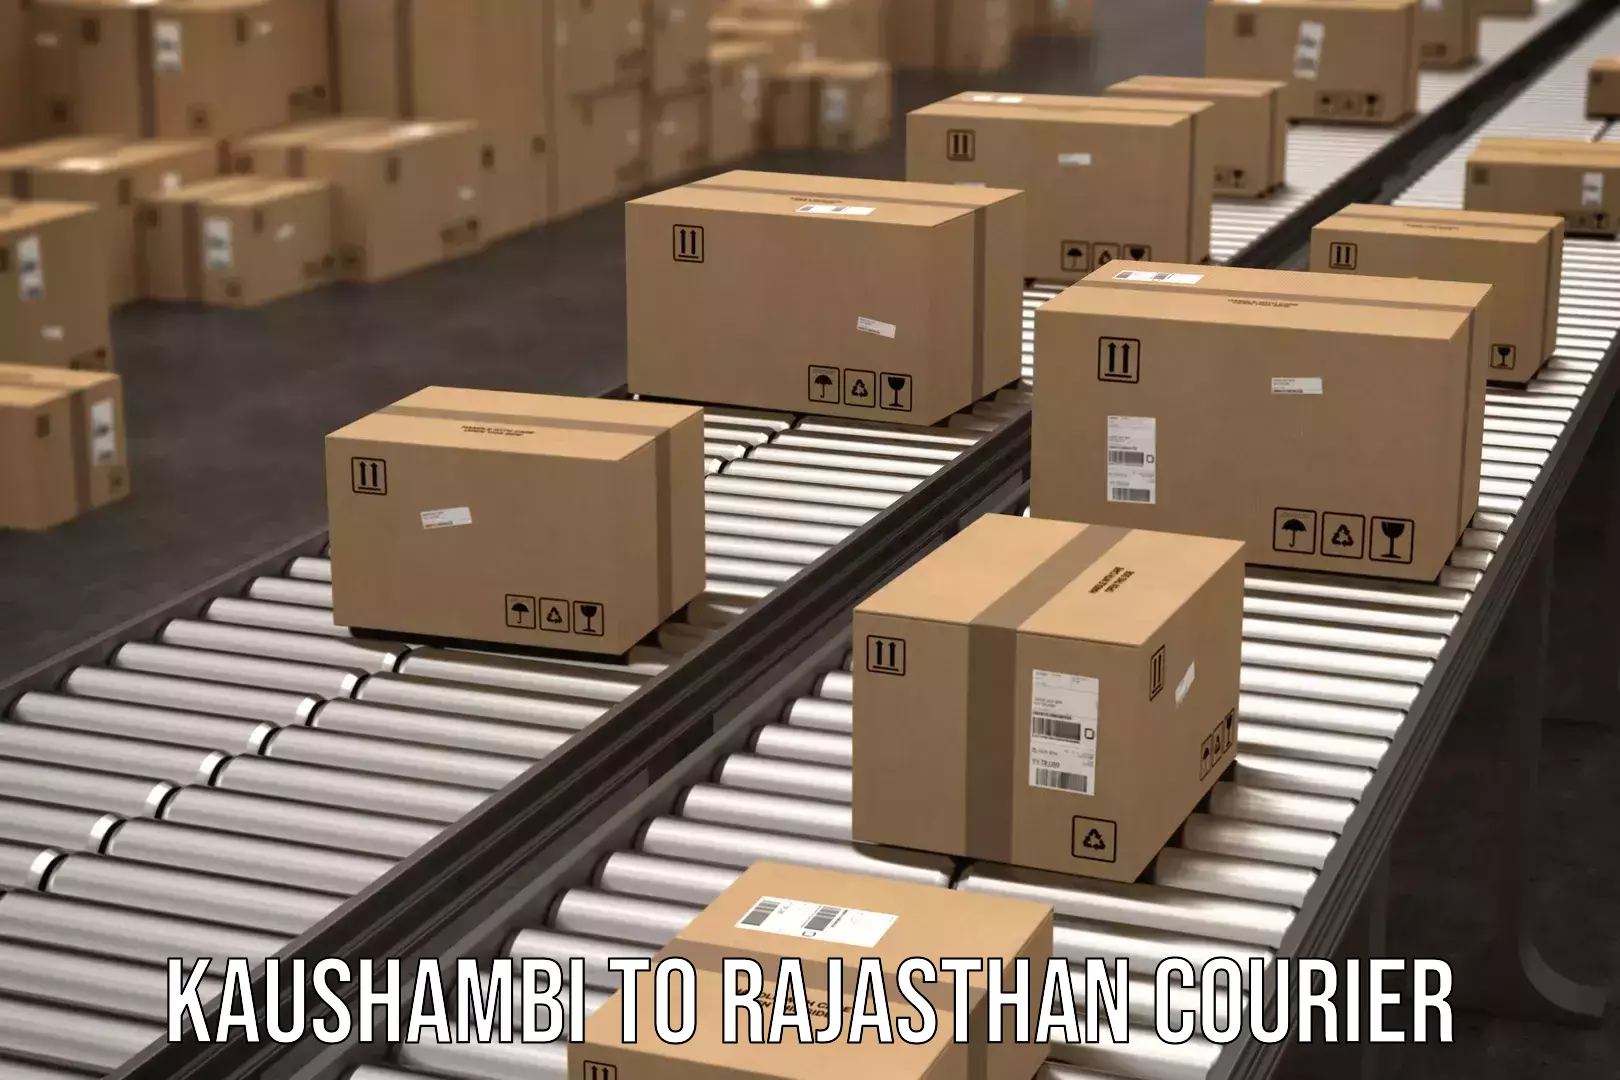 Courier service comparison in Kaushambi to Jaisalmer